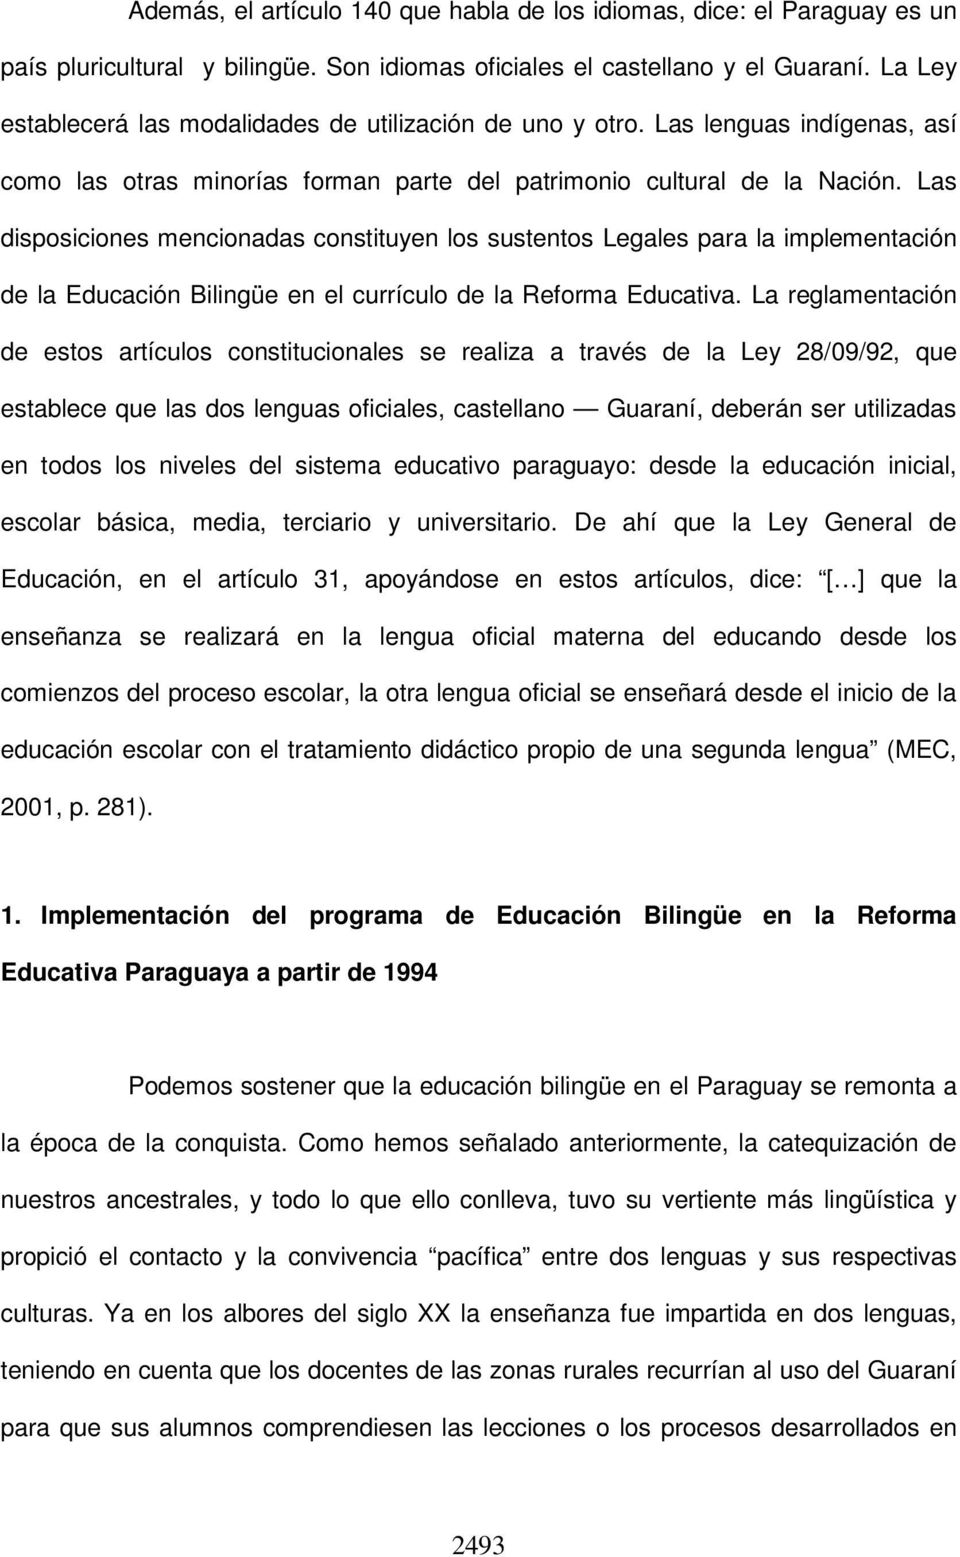 Las disposiciones mencionadas constituyen los sustentos Legales para la implementación de la Educación Bilingüe en el currículo de la Reforma Educativa.